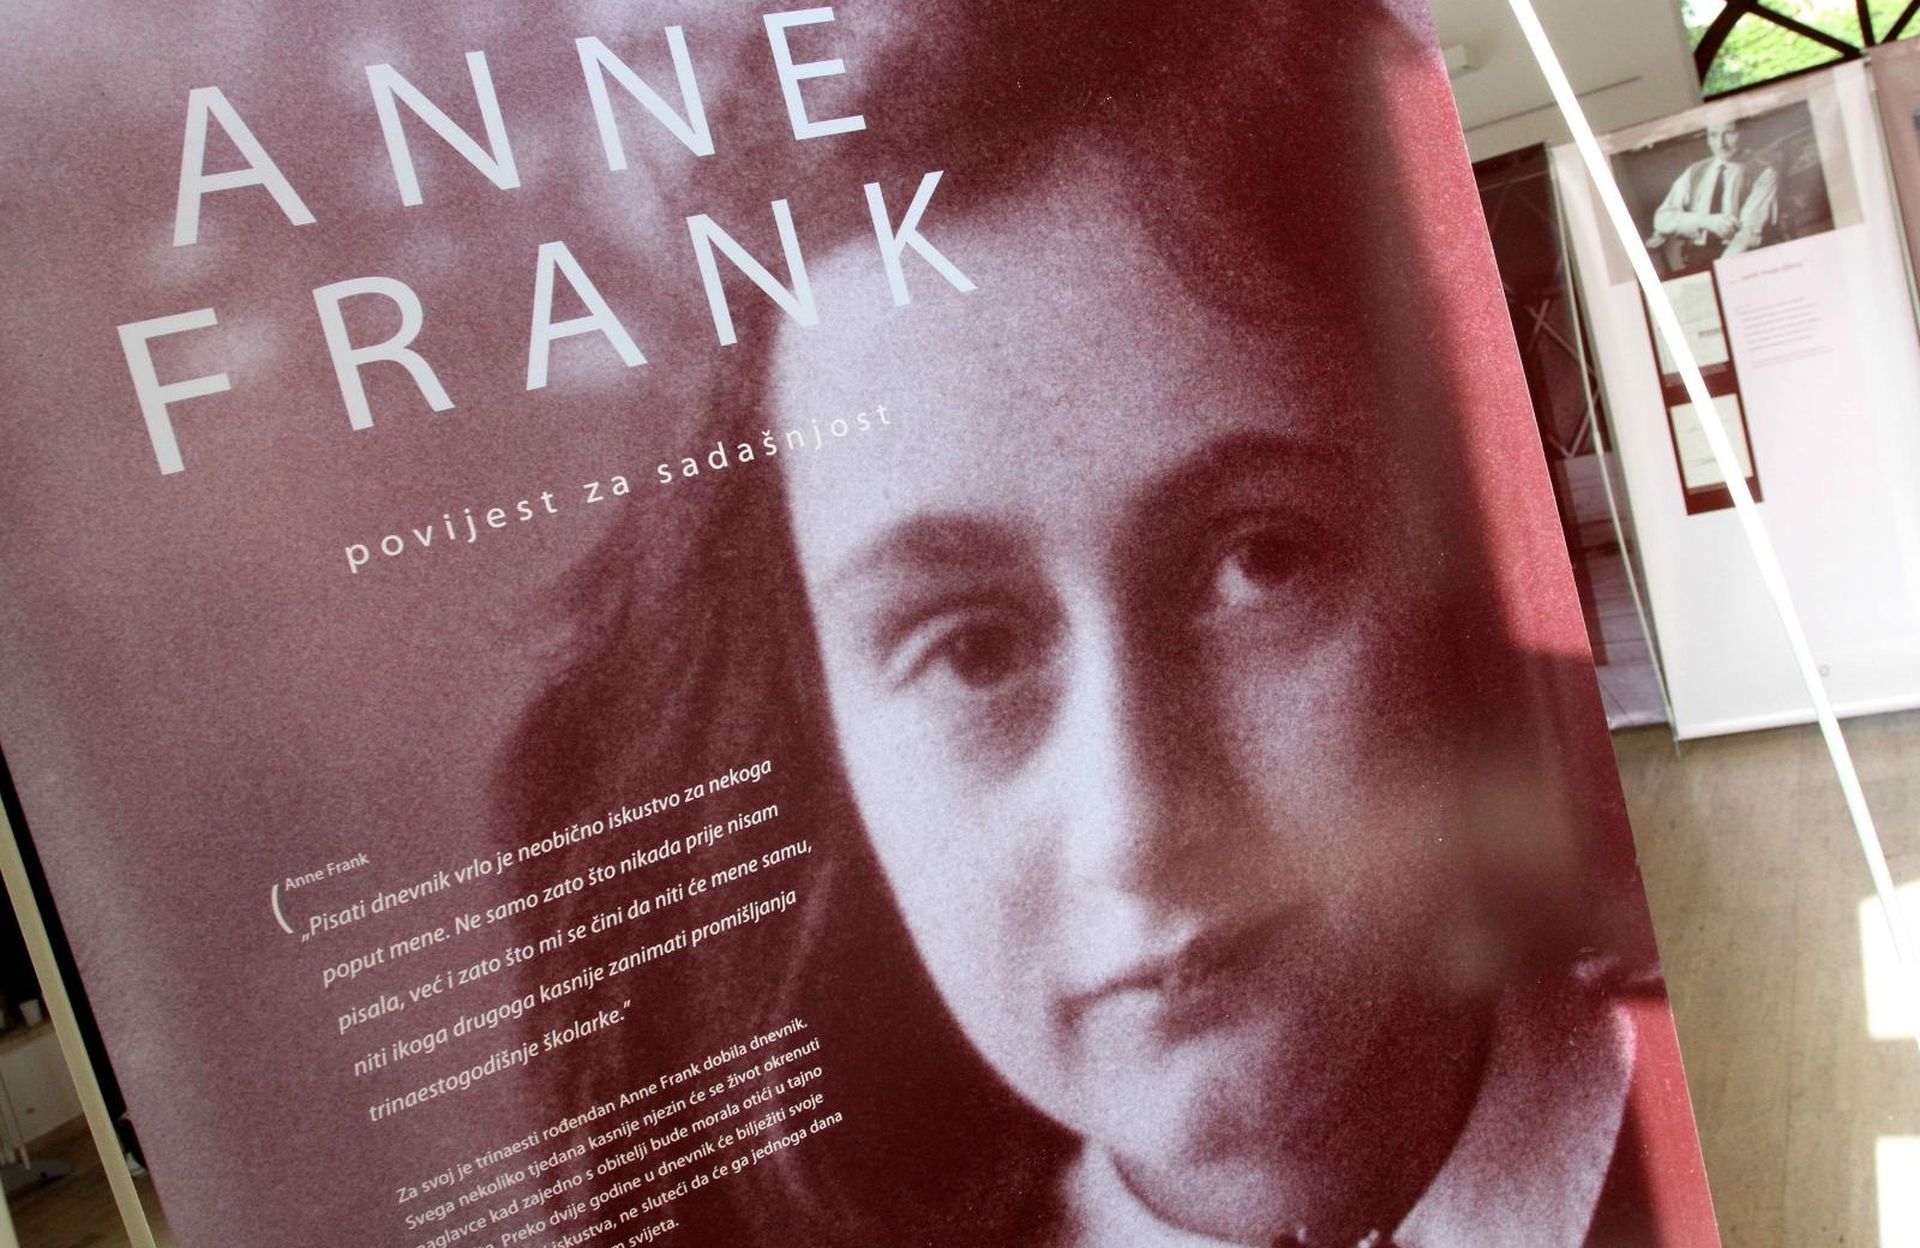 22.05.2014., Cakovec - U zgradi Scheier otvorena je izlozba Anne Frank. 
Photo: Vjeran Zganec Rogulja/PIXSELL